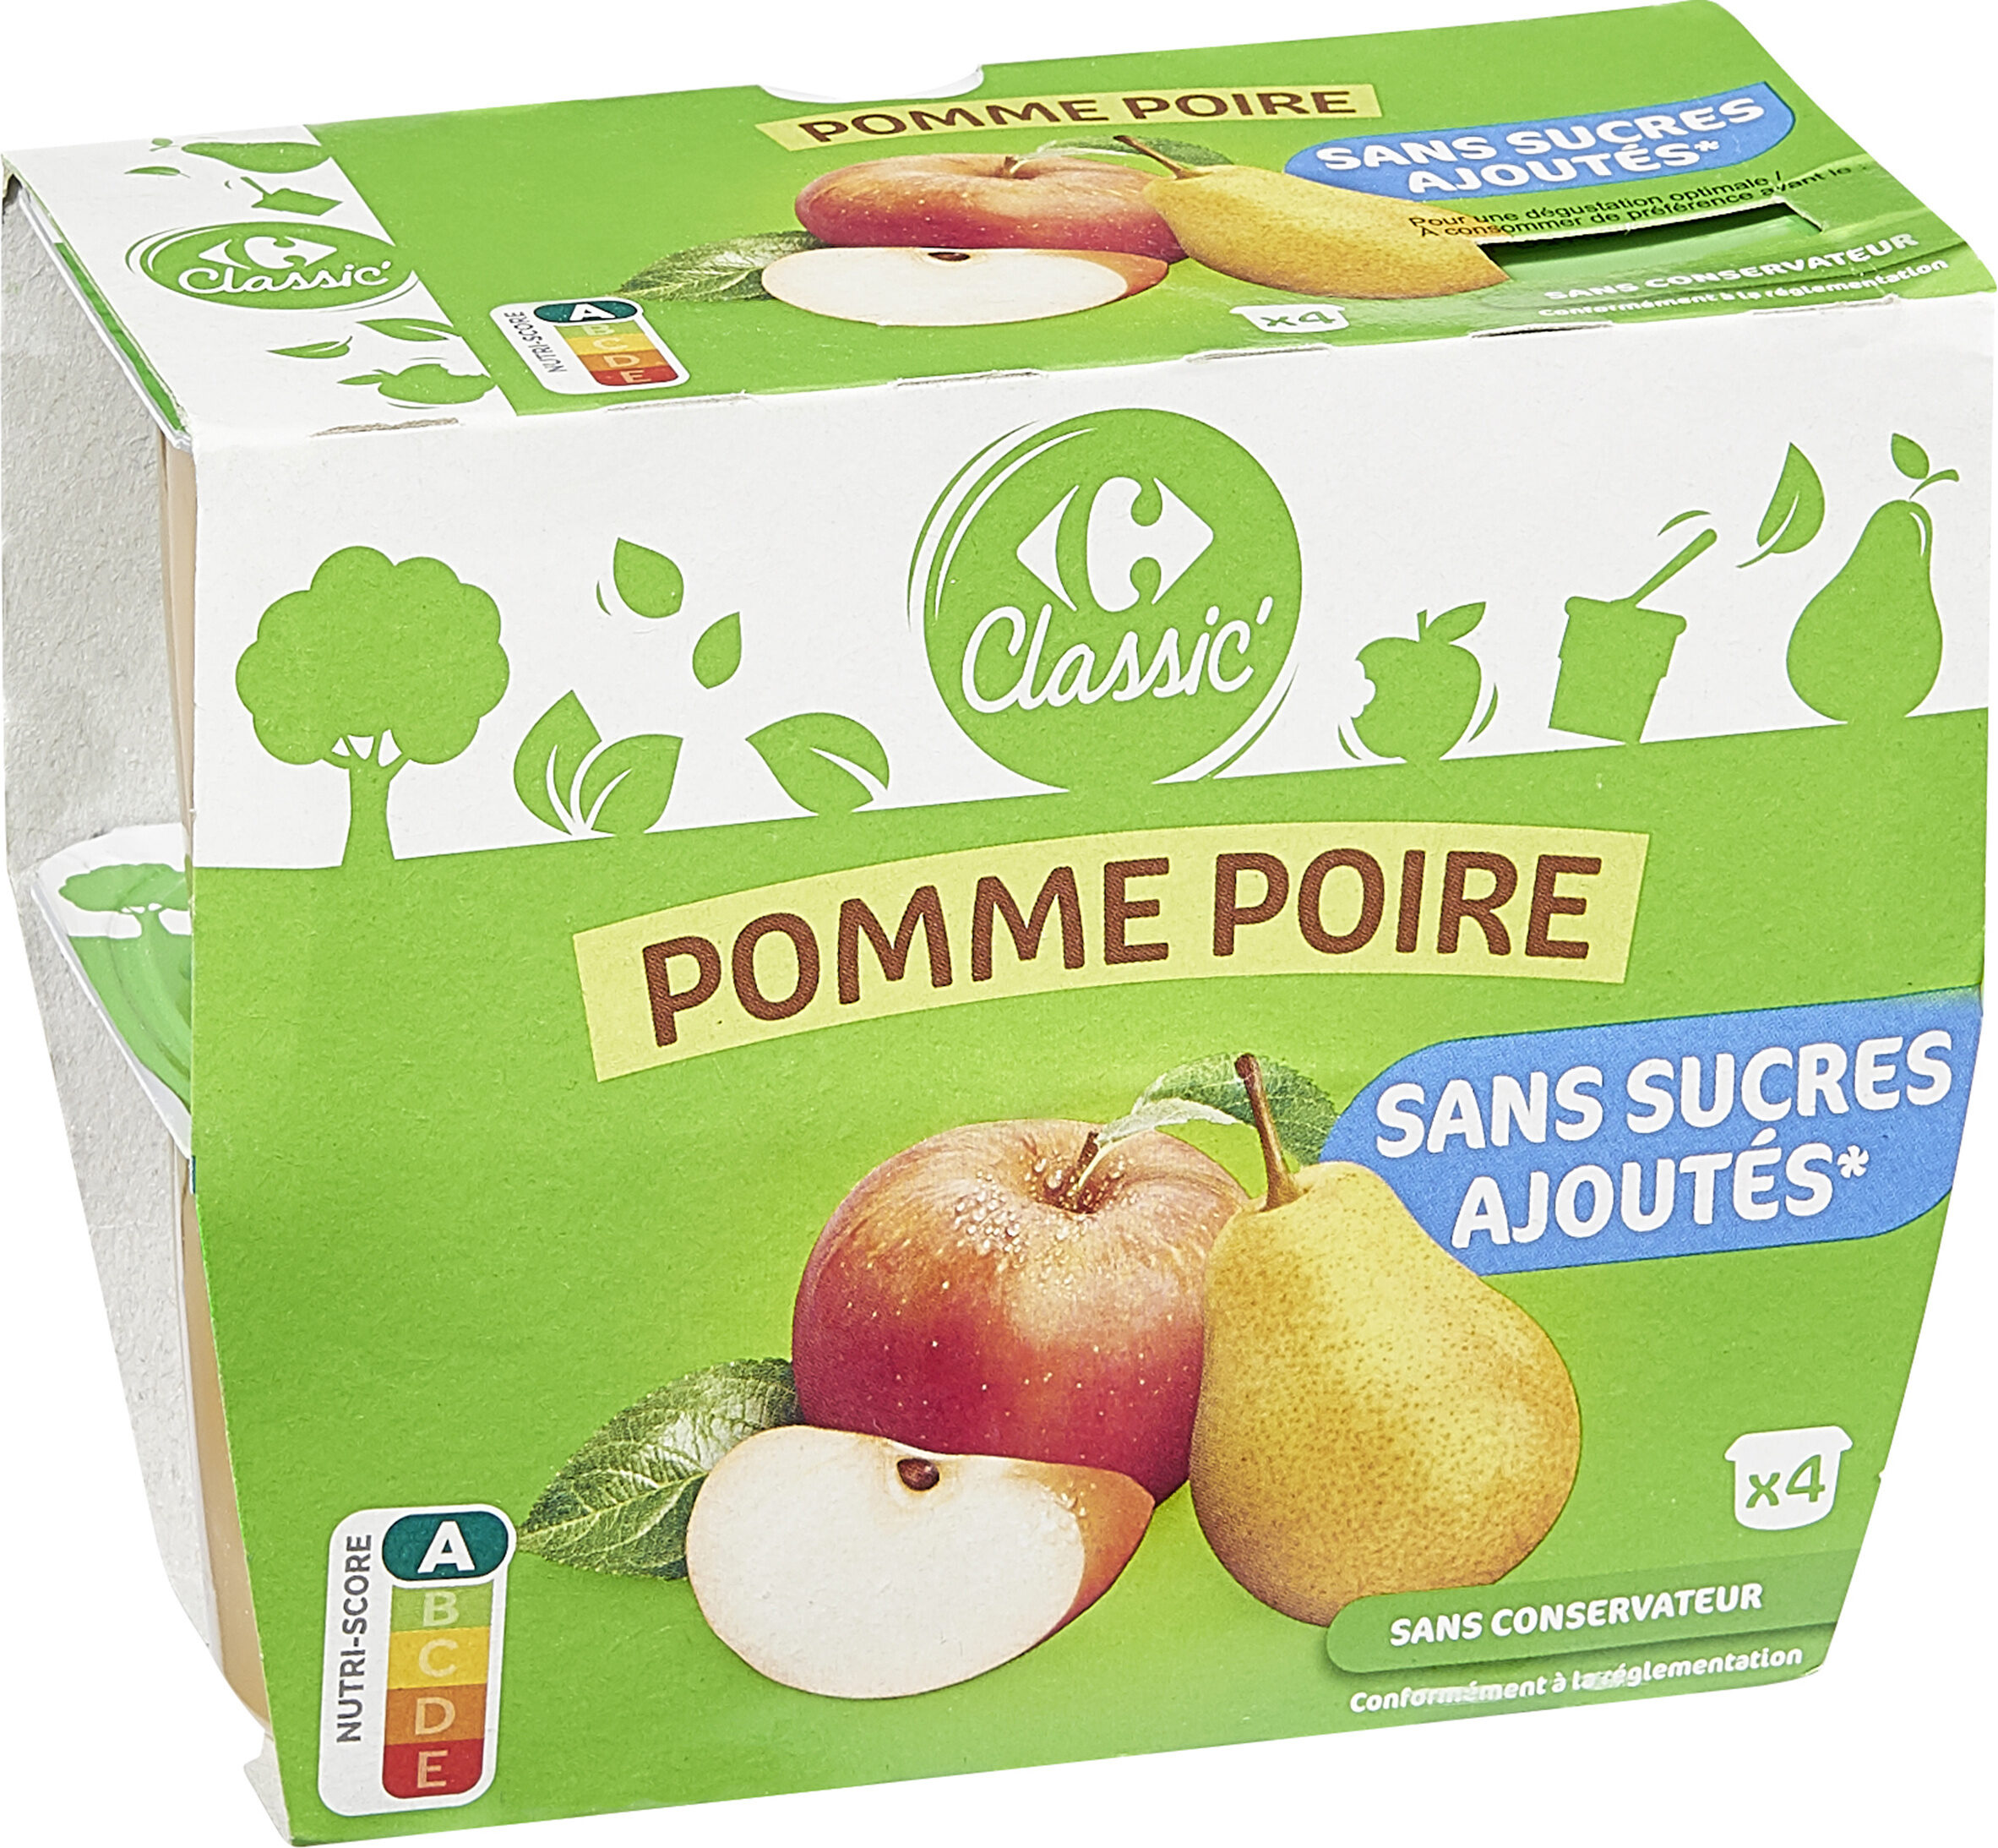 Pomme Poire Sans sucres ajoutés* - Product - fr